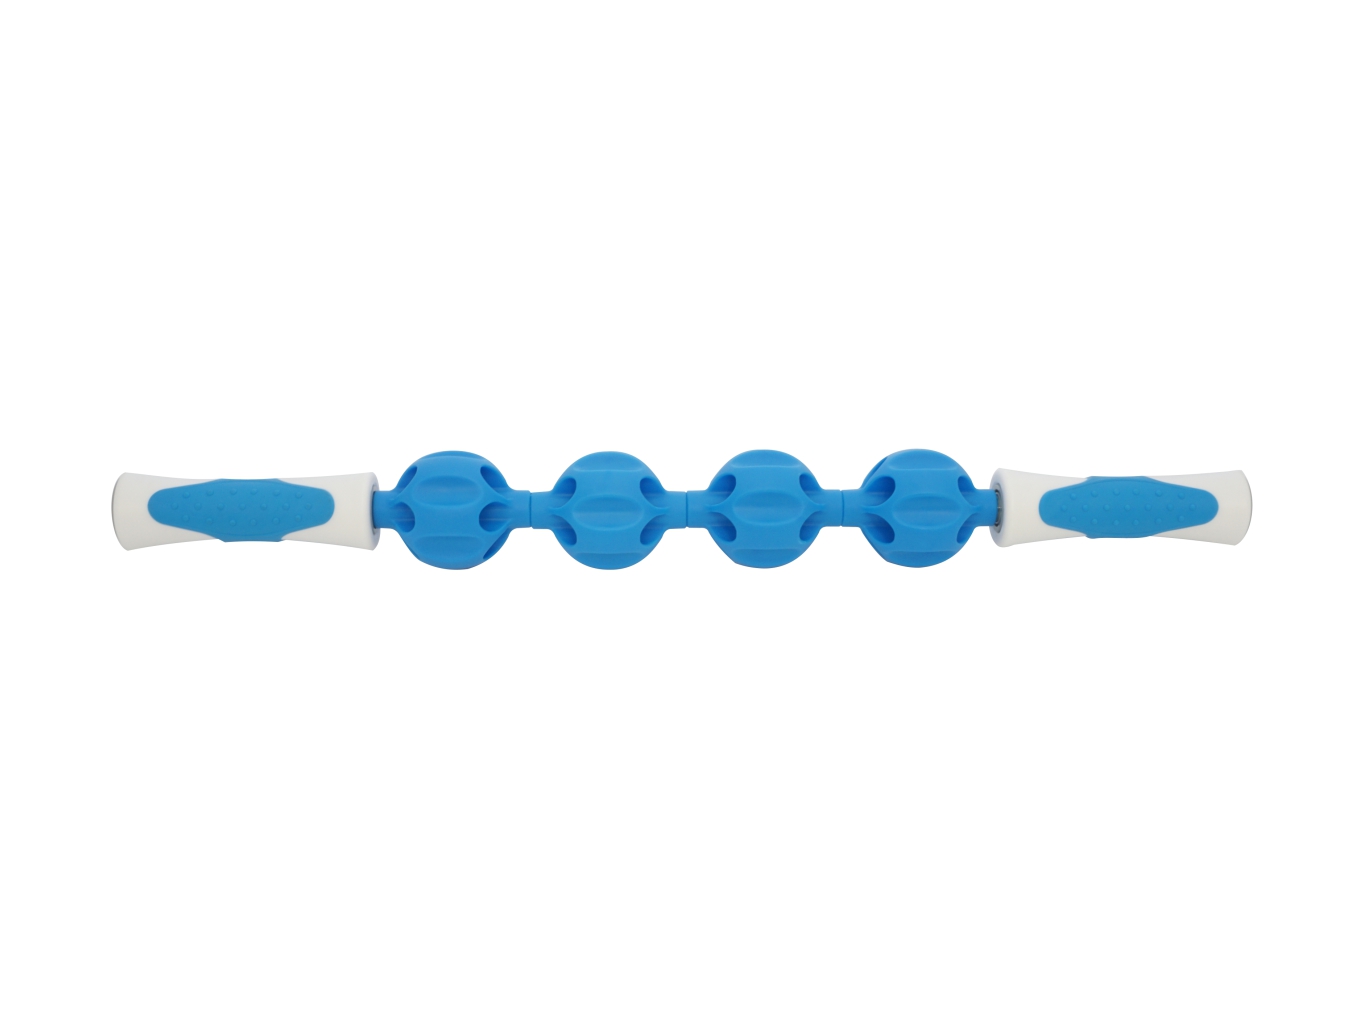 Kine-MAX Quattro Massage Stick - masážní tyč - modrá/bílá